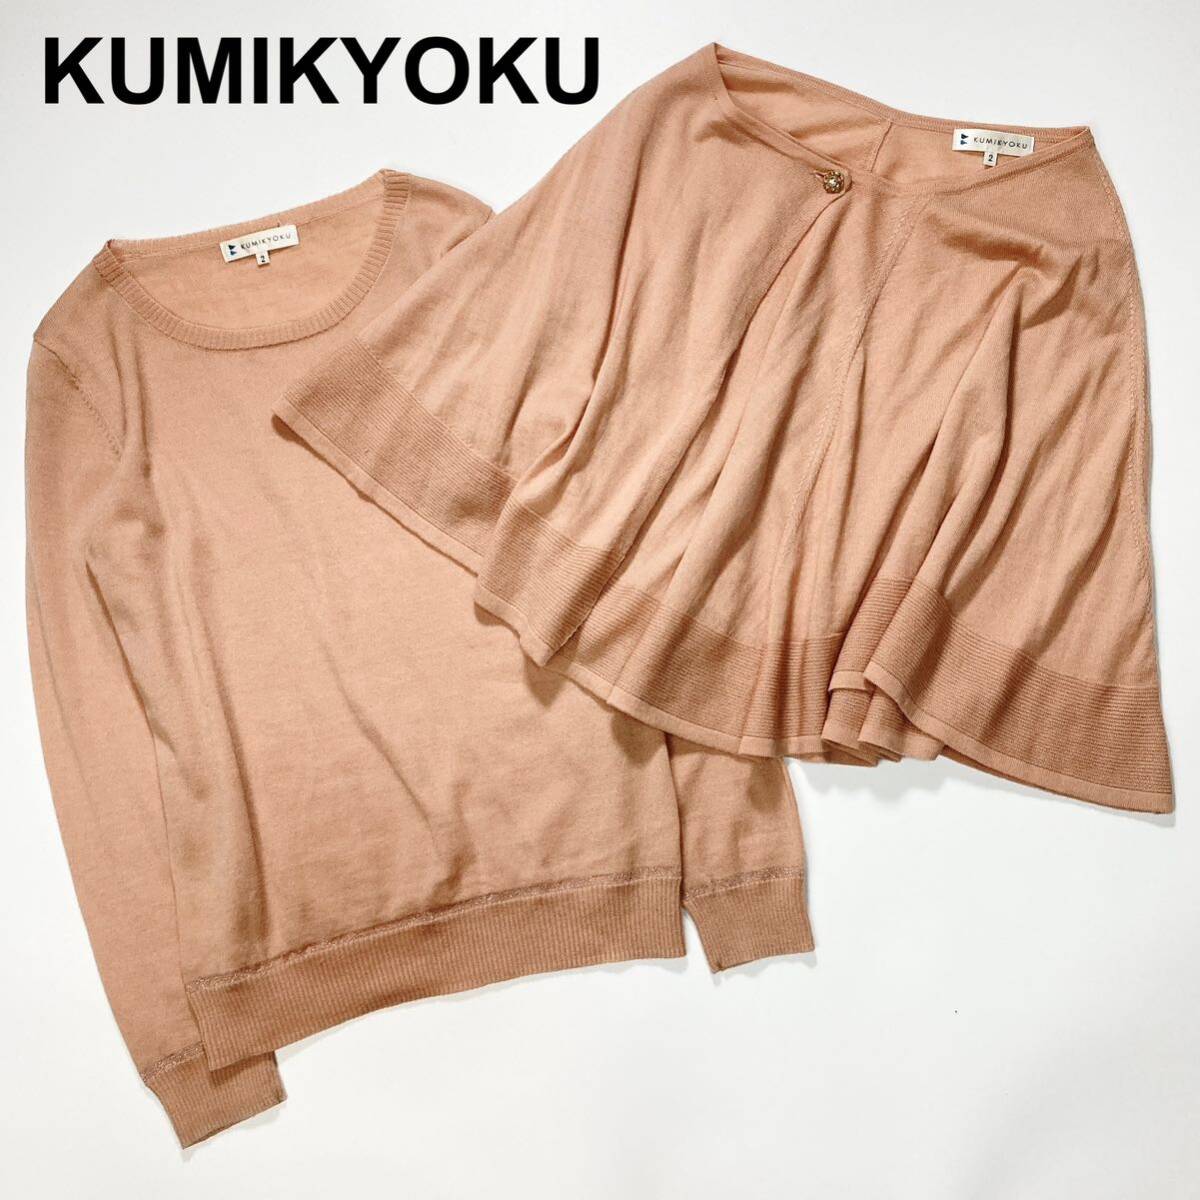 KUMIKYOKU Kumikyoku k Miki .k ensemble knitted cardigan sweater 2 lady's B42429-114